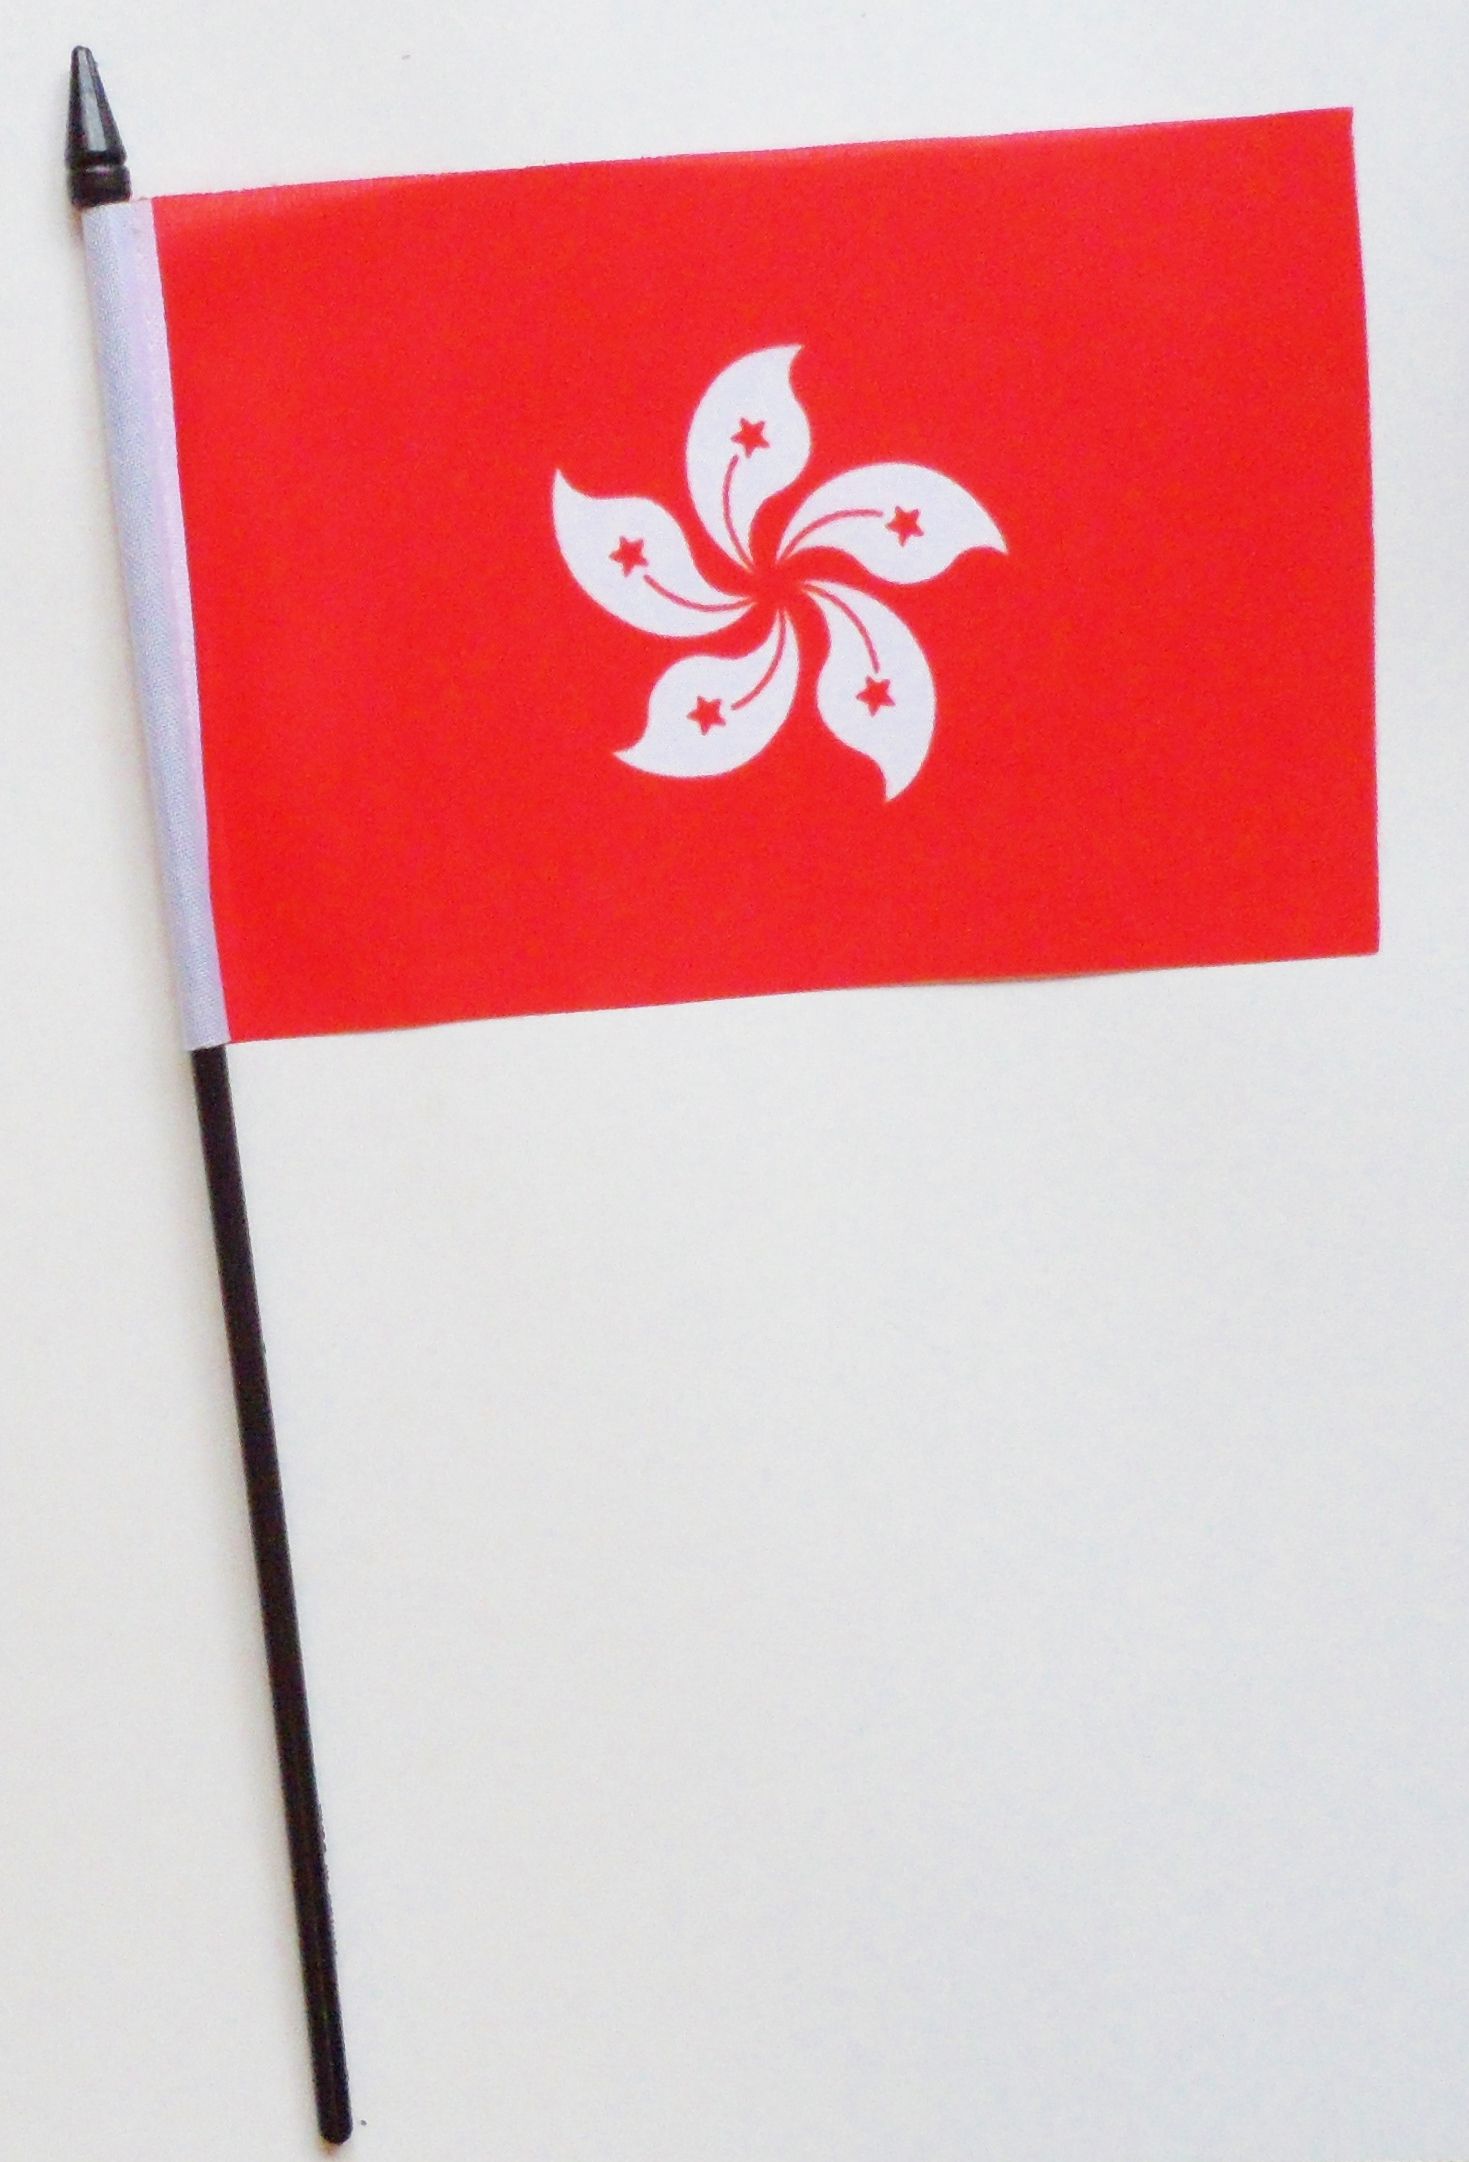 China Hong Kong Region Small Hand Waving Flag